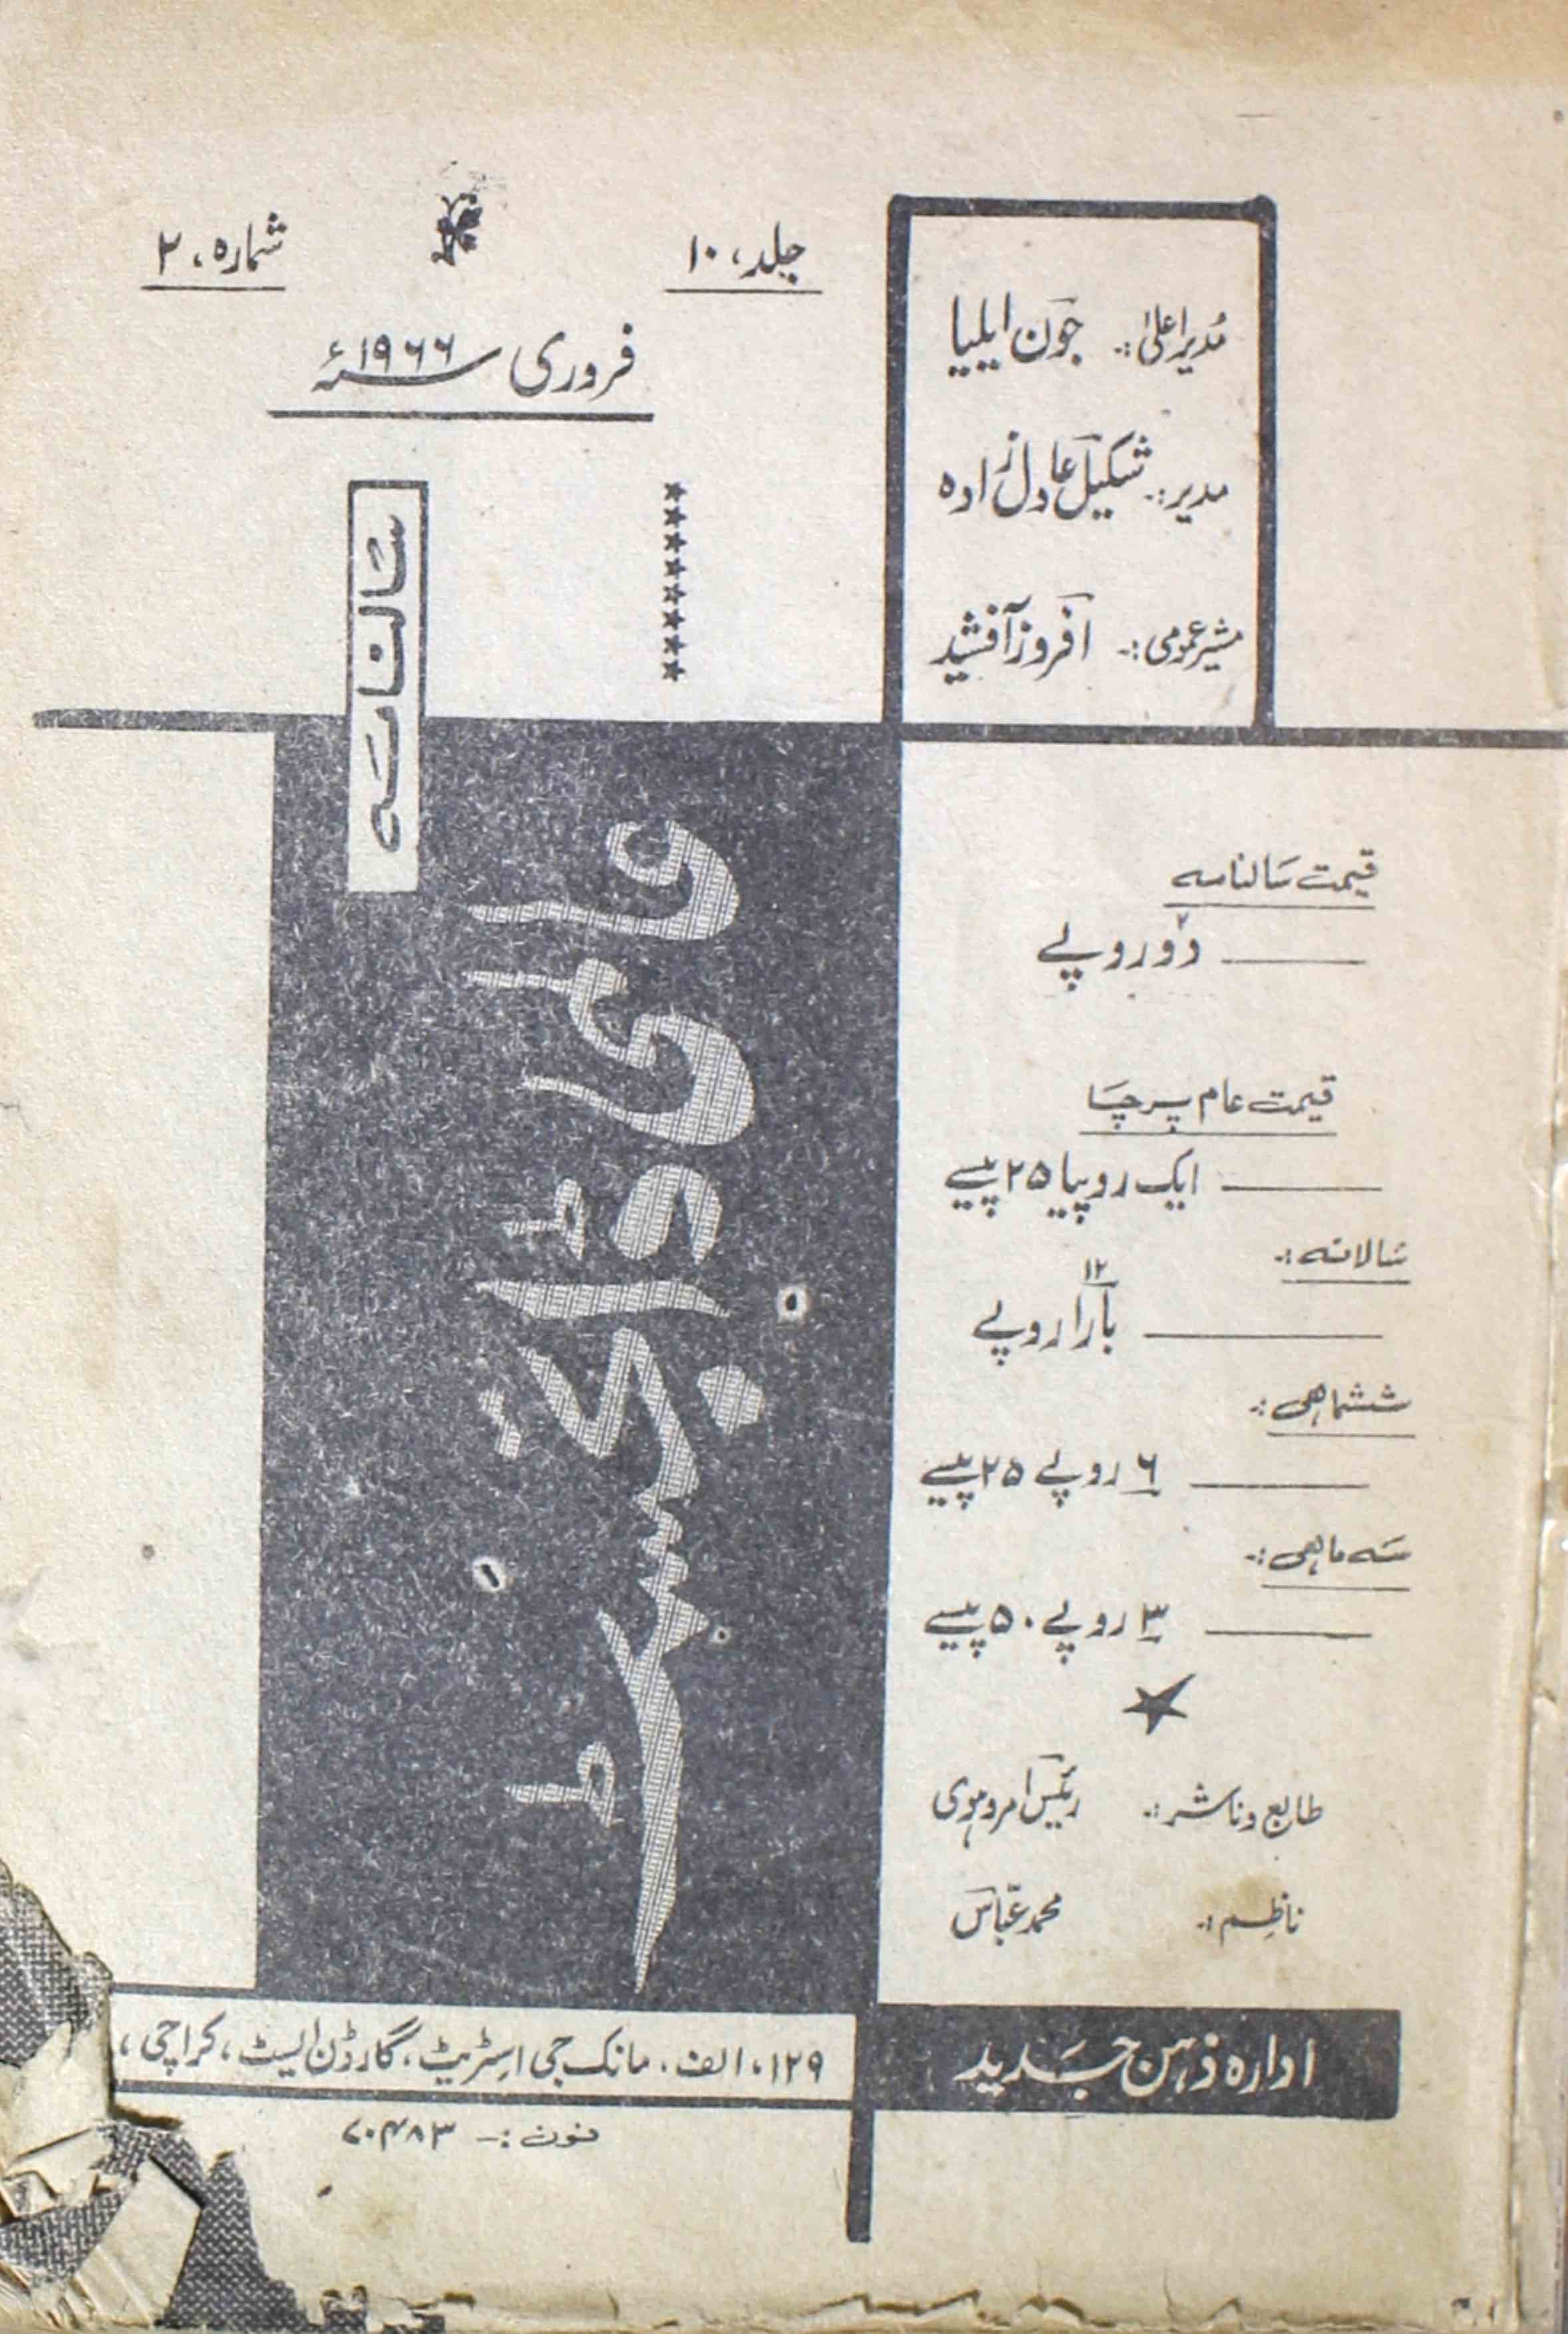 Aalimi Diagest Jild 10 Shumara 2 Feb 1966 SVK-Shumara Number-002